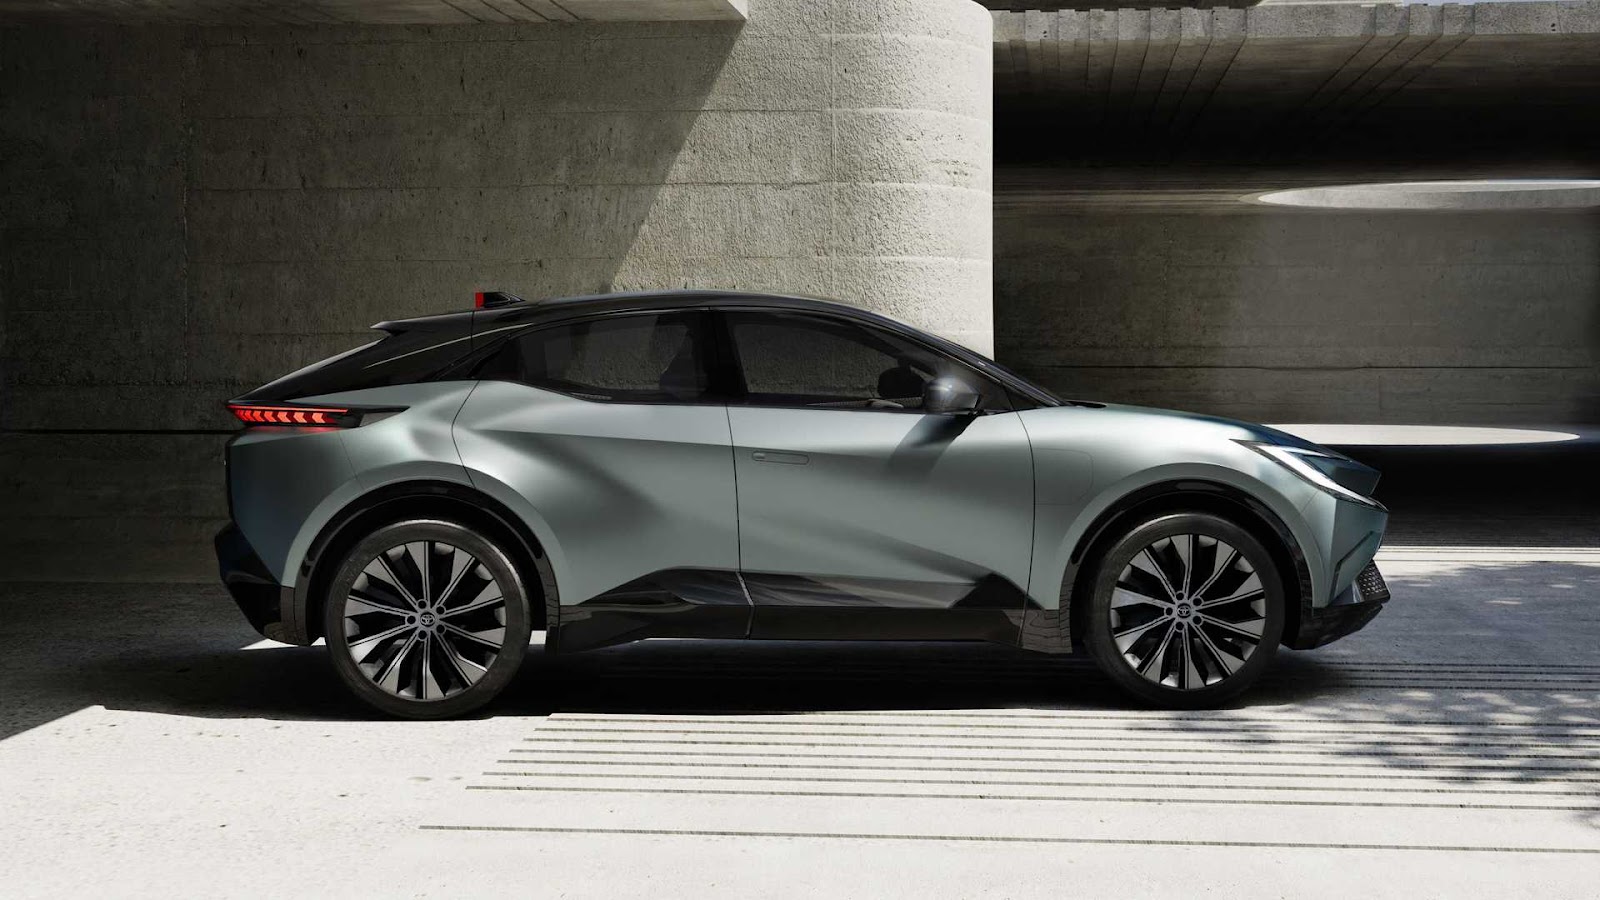 Toyota công bố một phần thông số, hình ảnh xe điện thứ 3 - Ảnh 5.